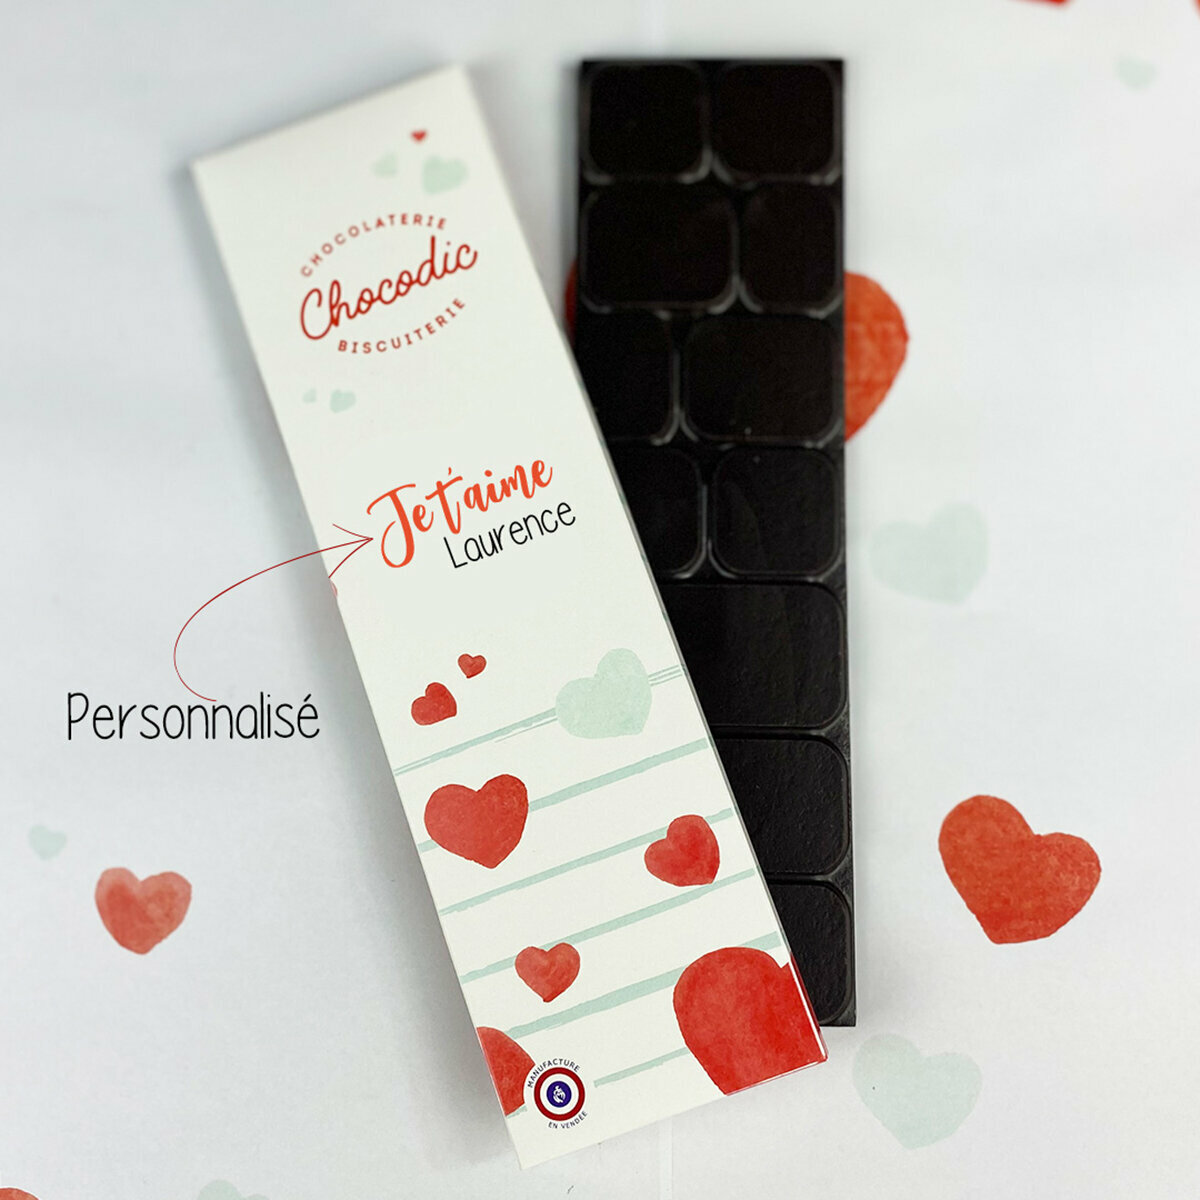 Tablette de chocolat personnalisé Cadeau etudiant droit notaire white -  Sacs & Accessoires